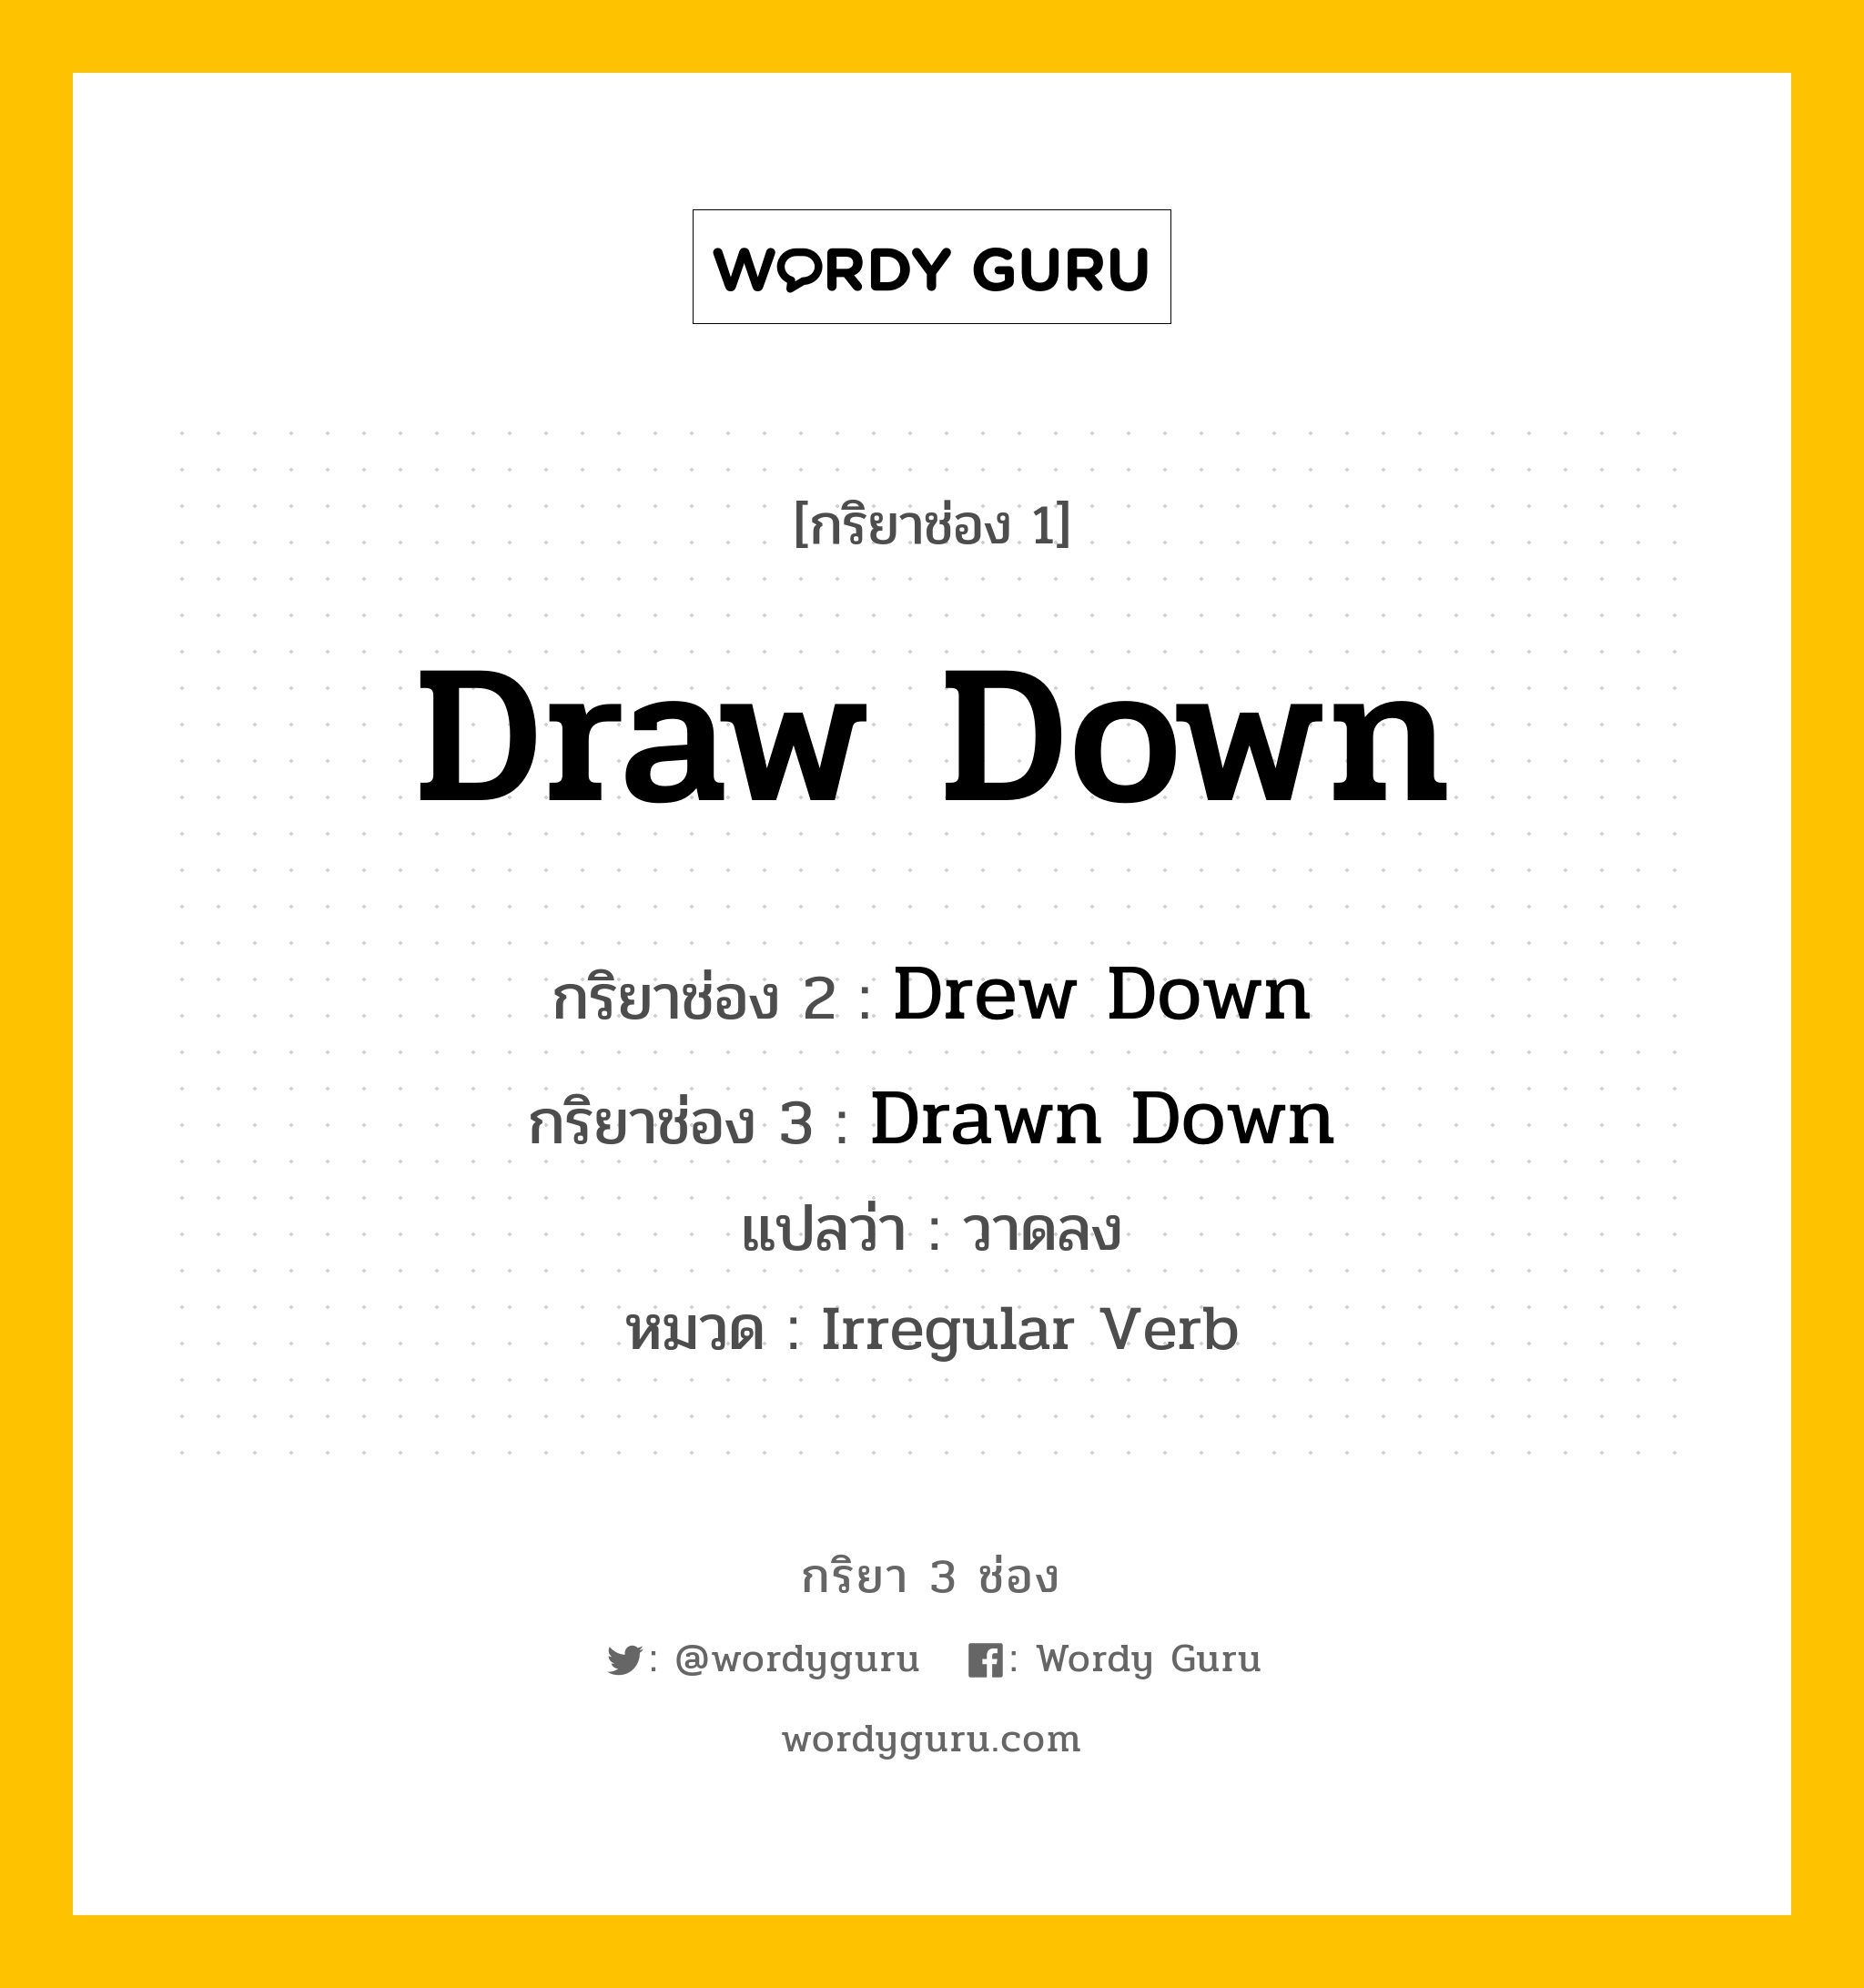 กริยา 3 ช่อง: Draw Down ช่อง 2 Draw Down ช่อง 3 คืออะไร, กริยาช่อง 1 Draw Down กริยาช่อง 2 Drew Down กริยาช่อง 3 Drawn Down แปลว่า วาดลง หมวด Irregular Verb หมวด Irregular Verb